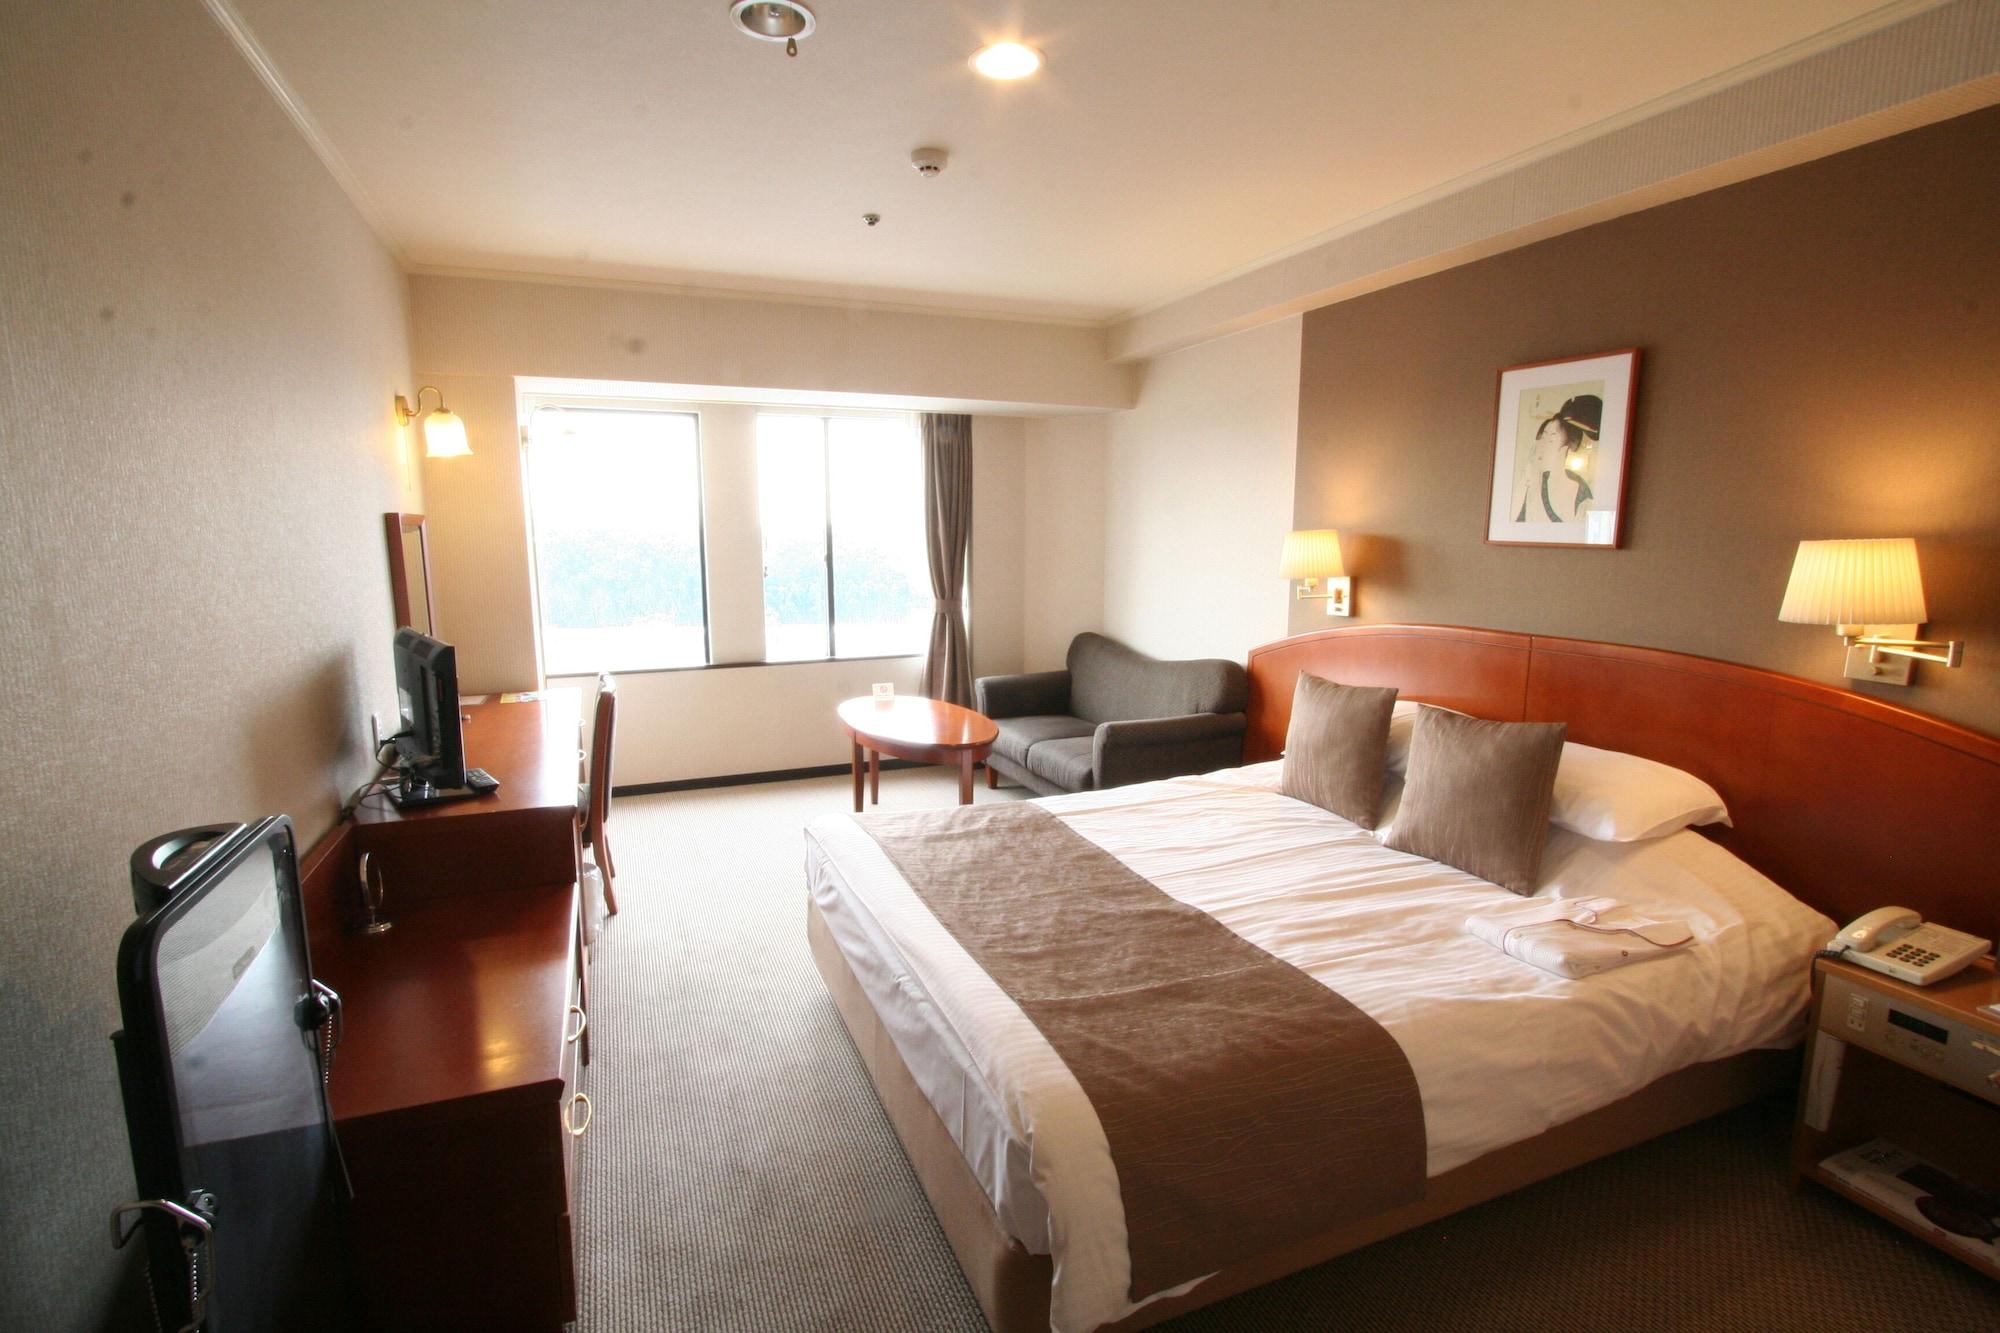 Okayama Plaza Hotel Dış mekan fotoğraf